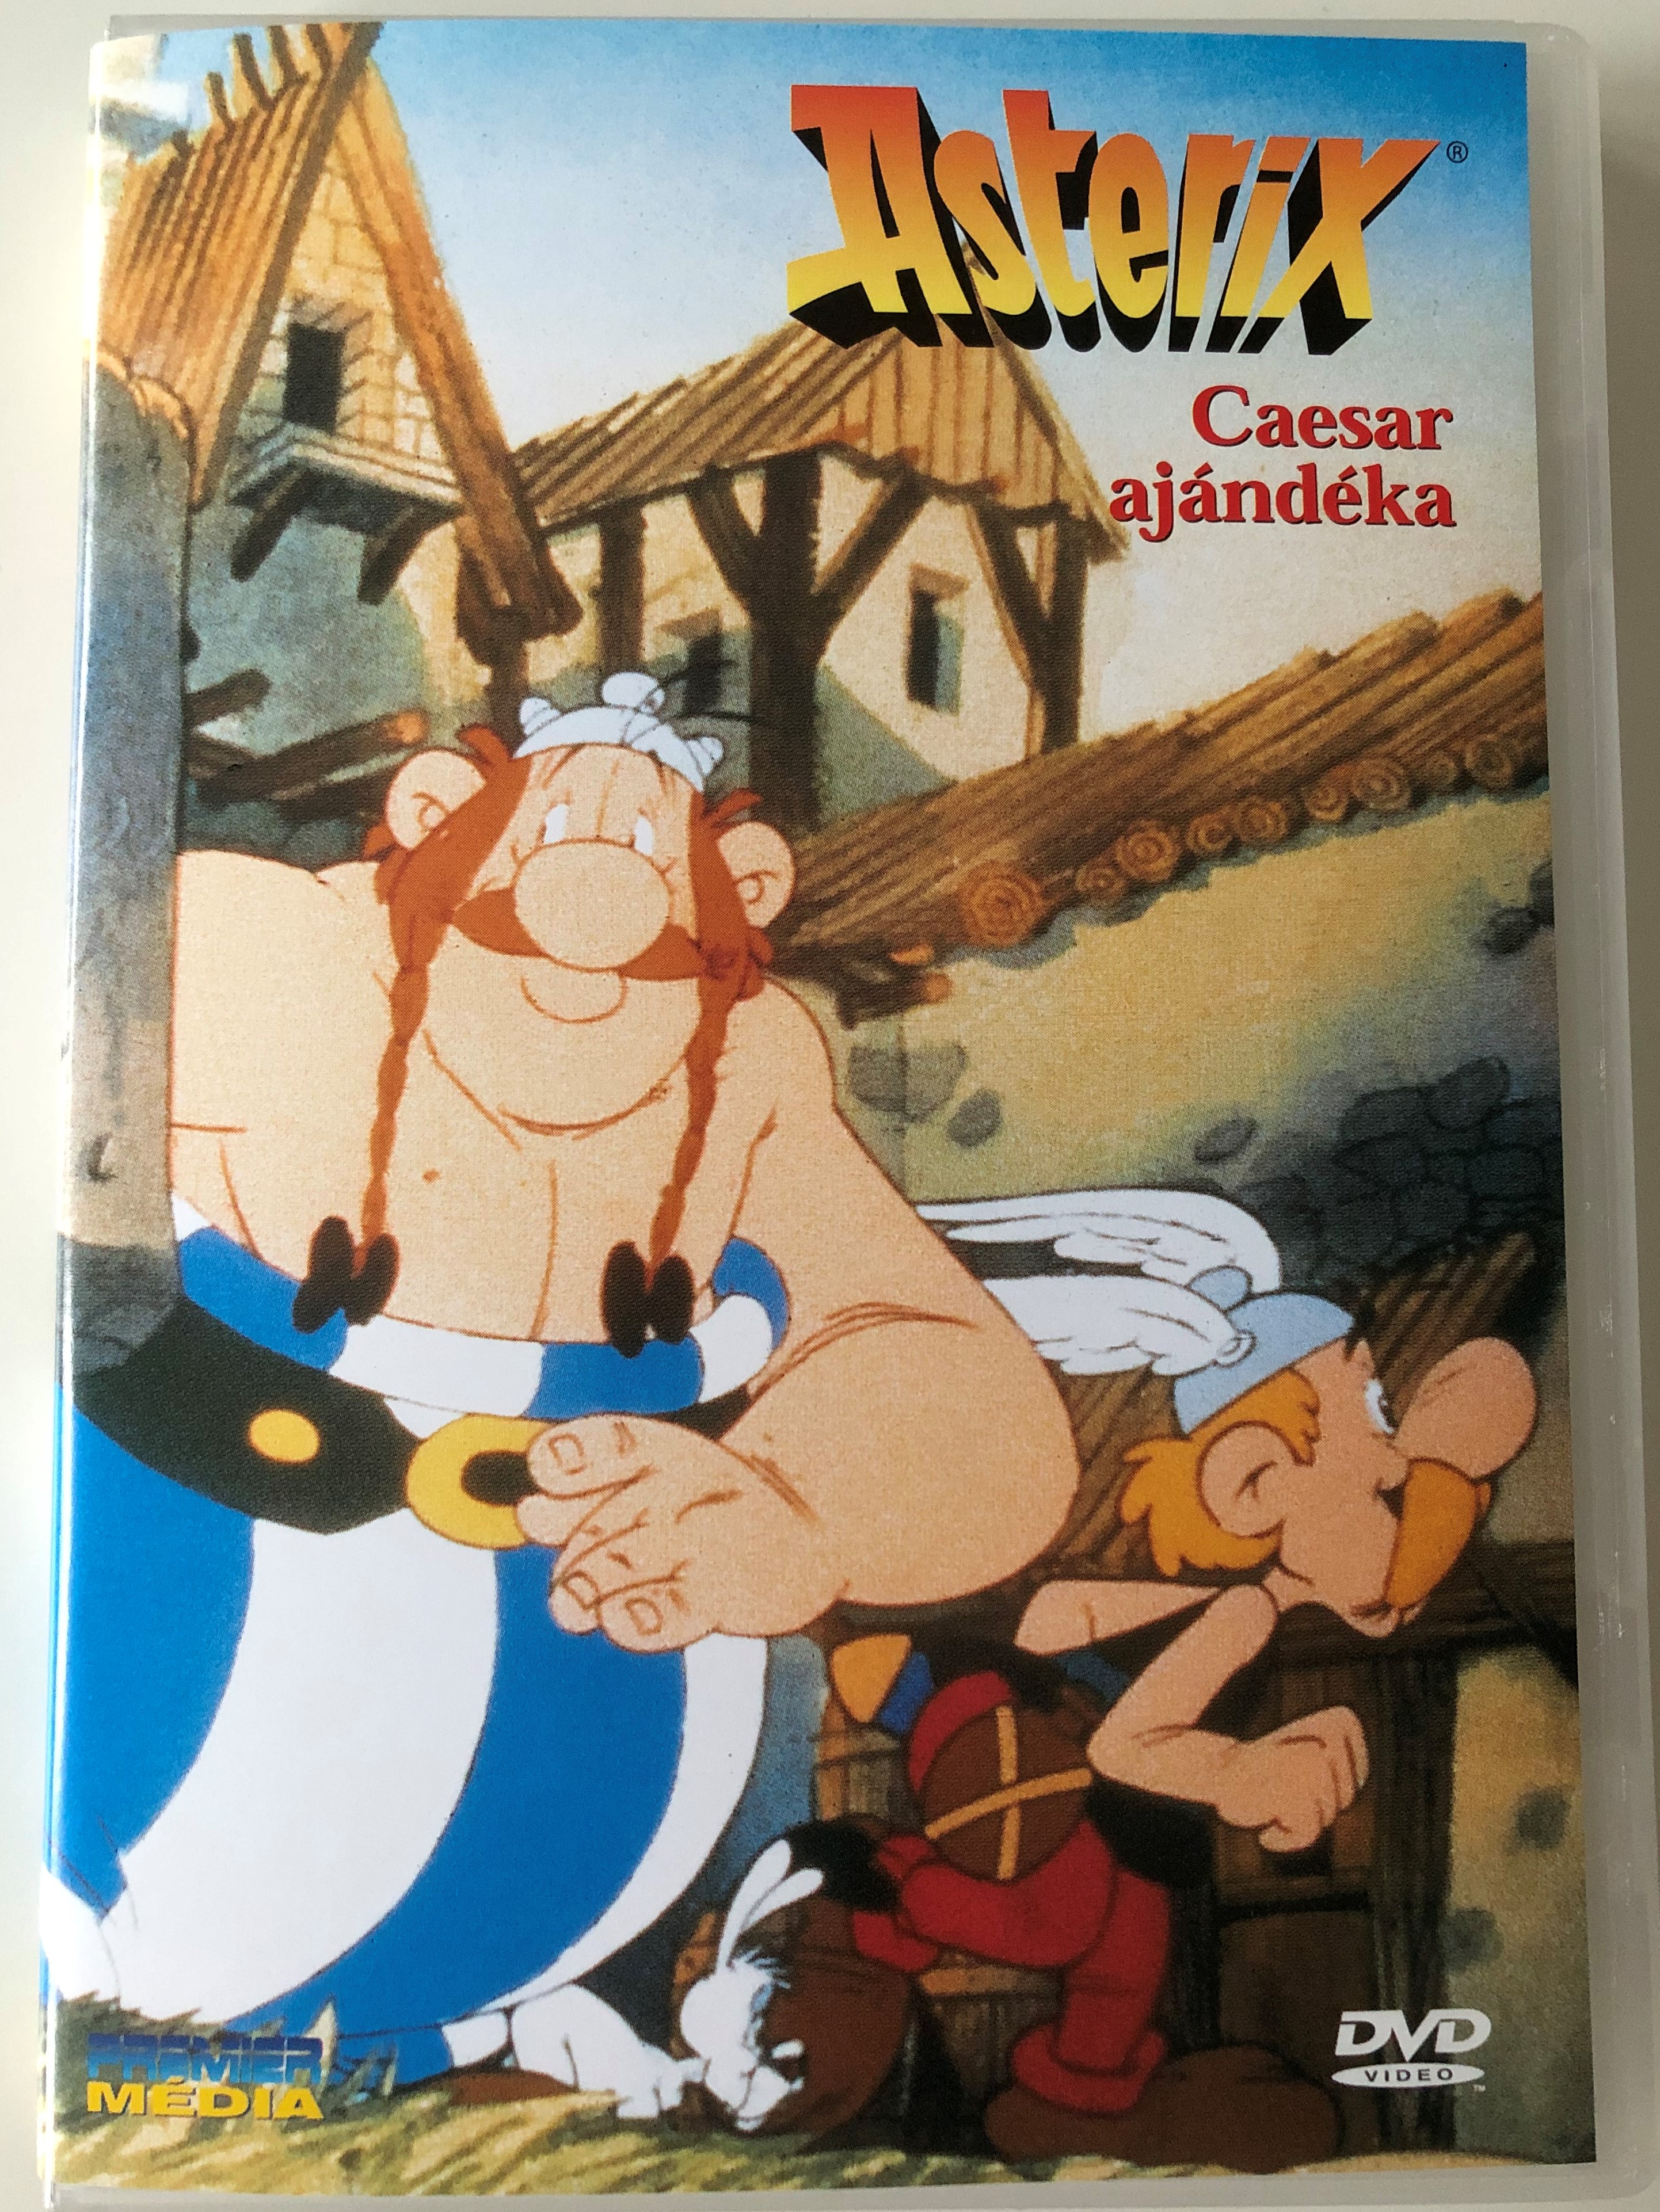 asterix-c-z-r-aj-nd-ka-ast-rix-et-la-surprise-de-c-sar-dvd-1985-1.jpg